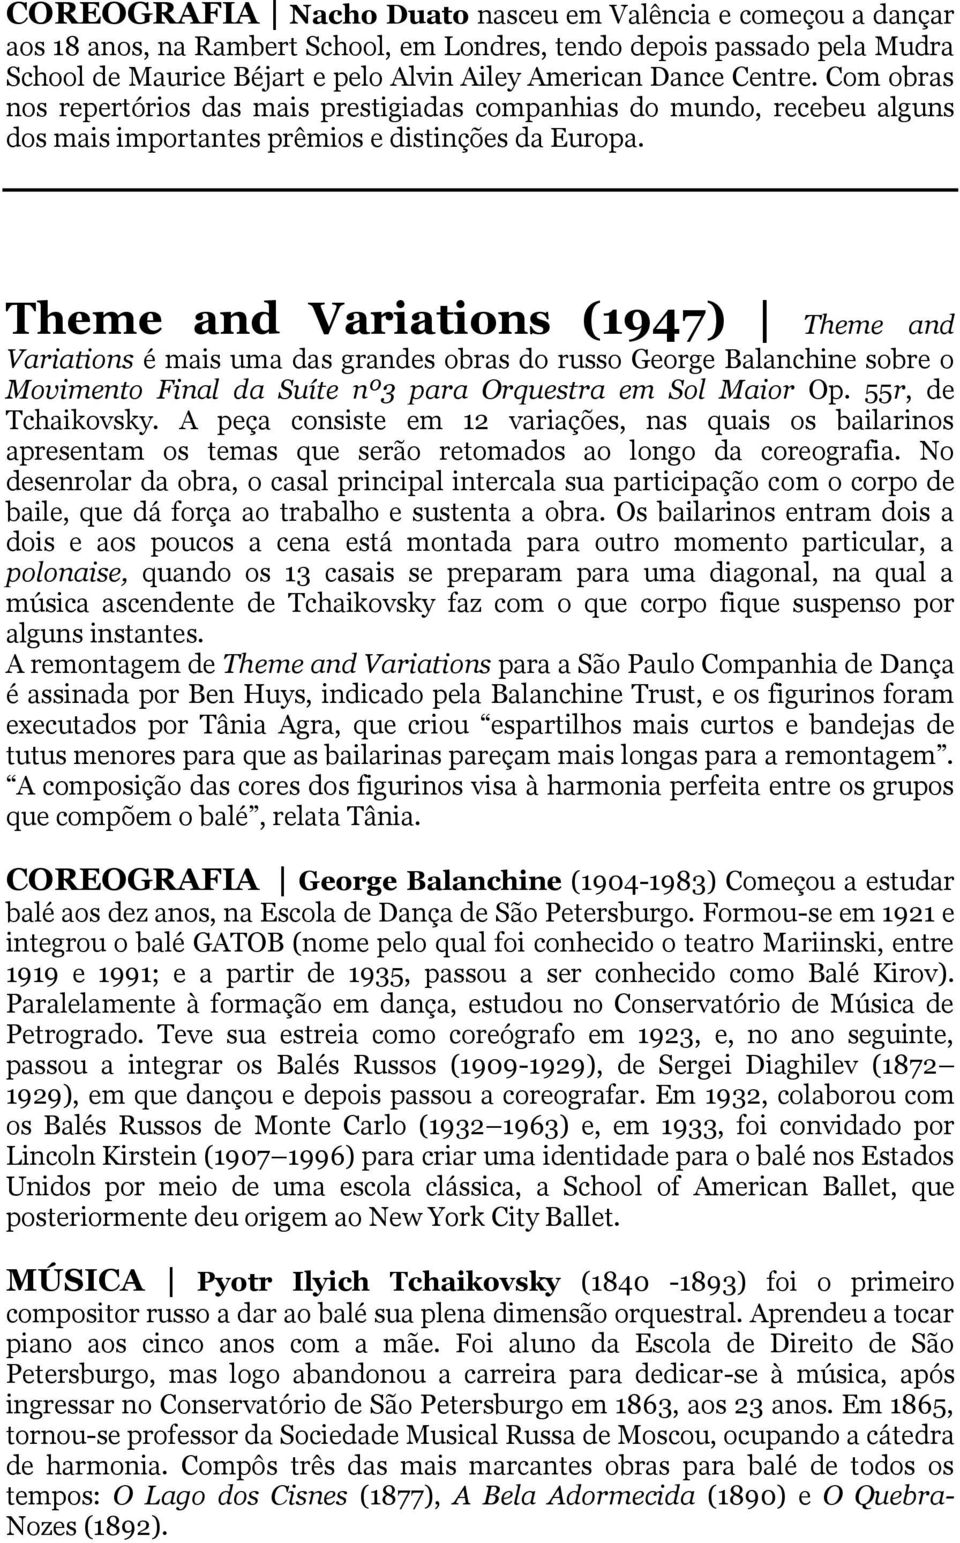 Theme and Variations (1947) Theme and Variations é mais uma das grandes obras do russo George Balanchine sobre o Movimento Final da Suíte nº3 para Orquestra em Sol Maior Op. 55r, de Tchaikovsky.